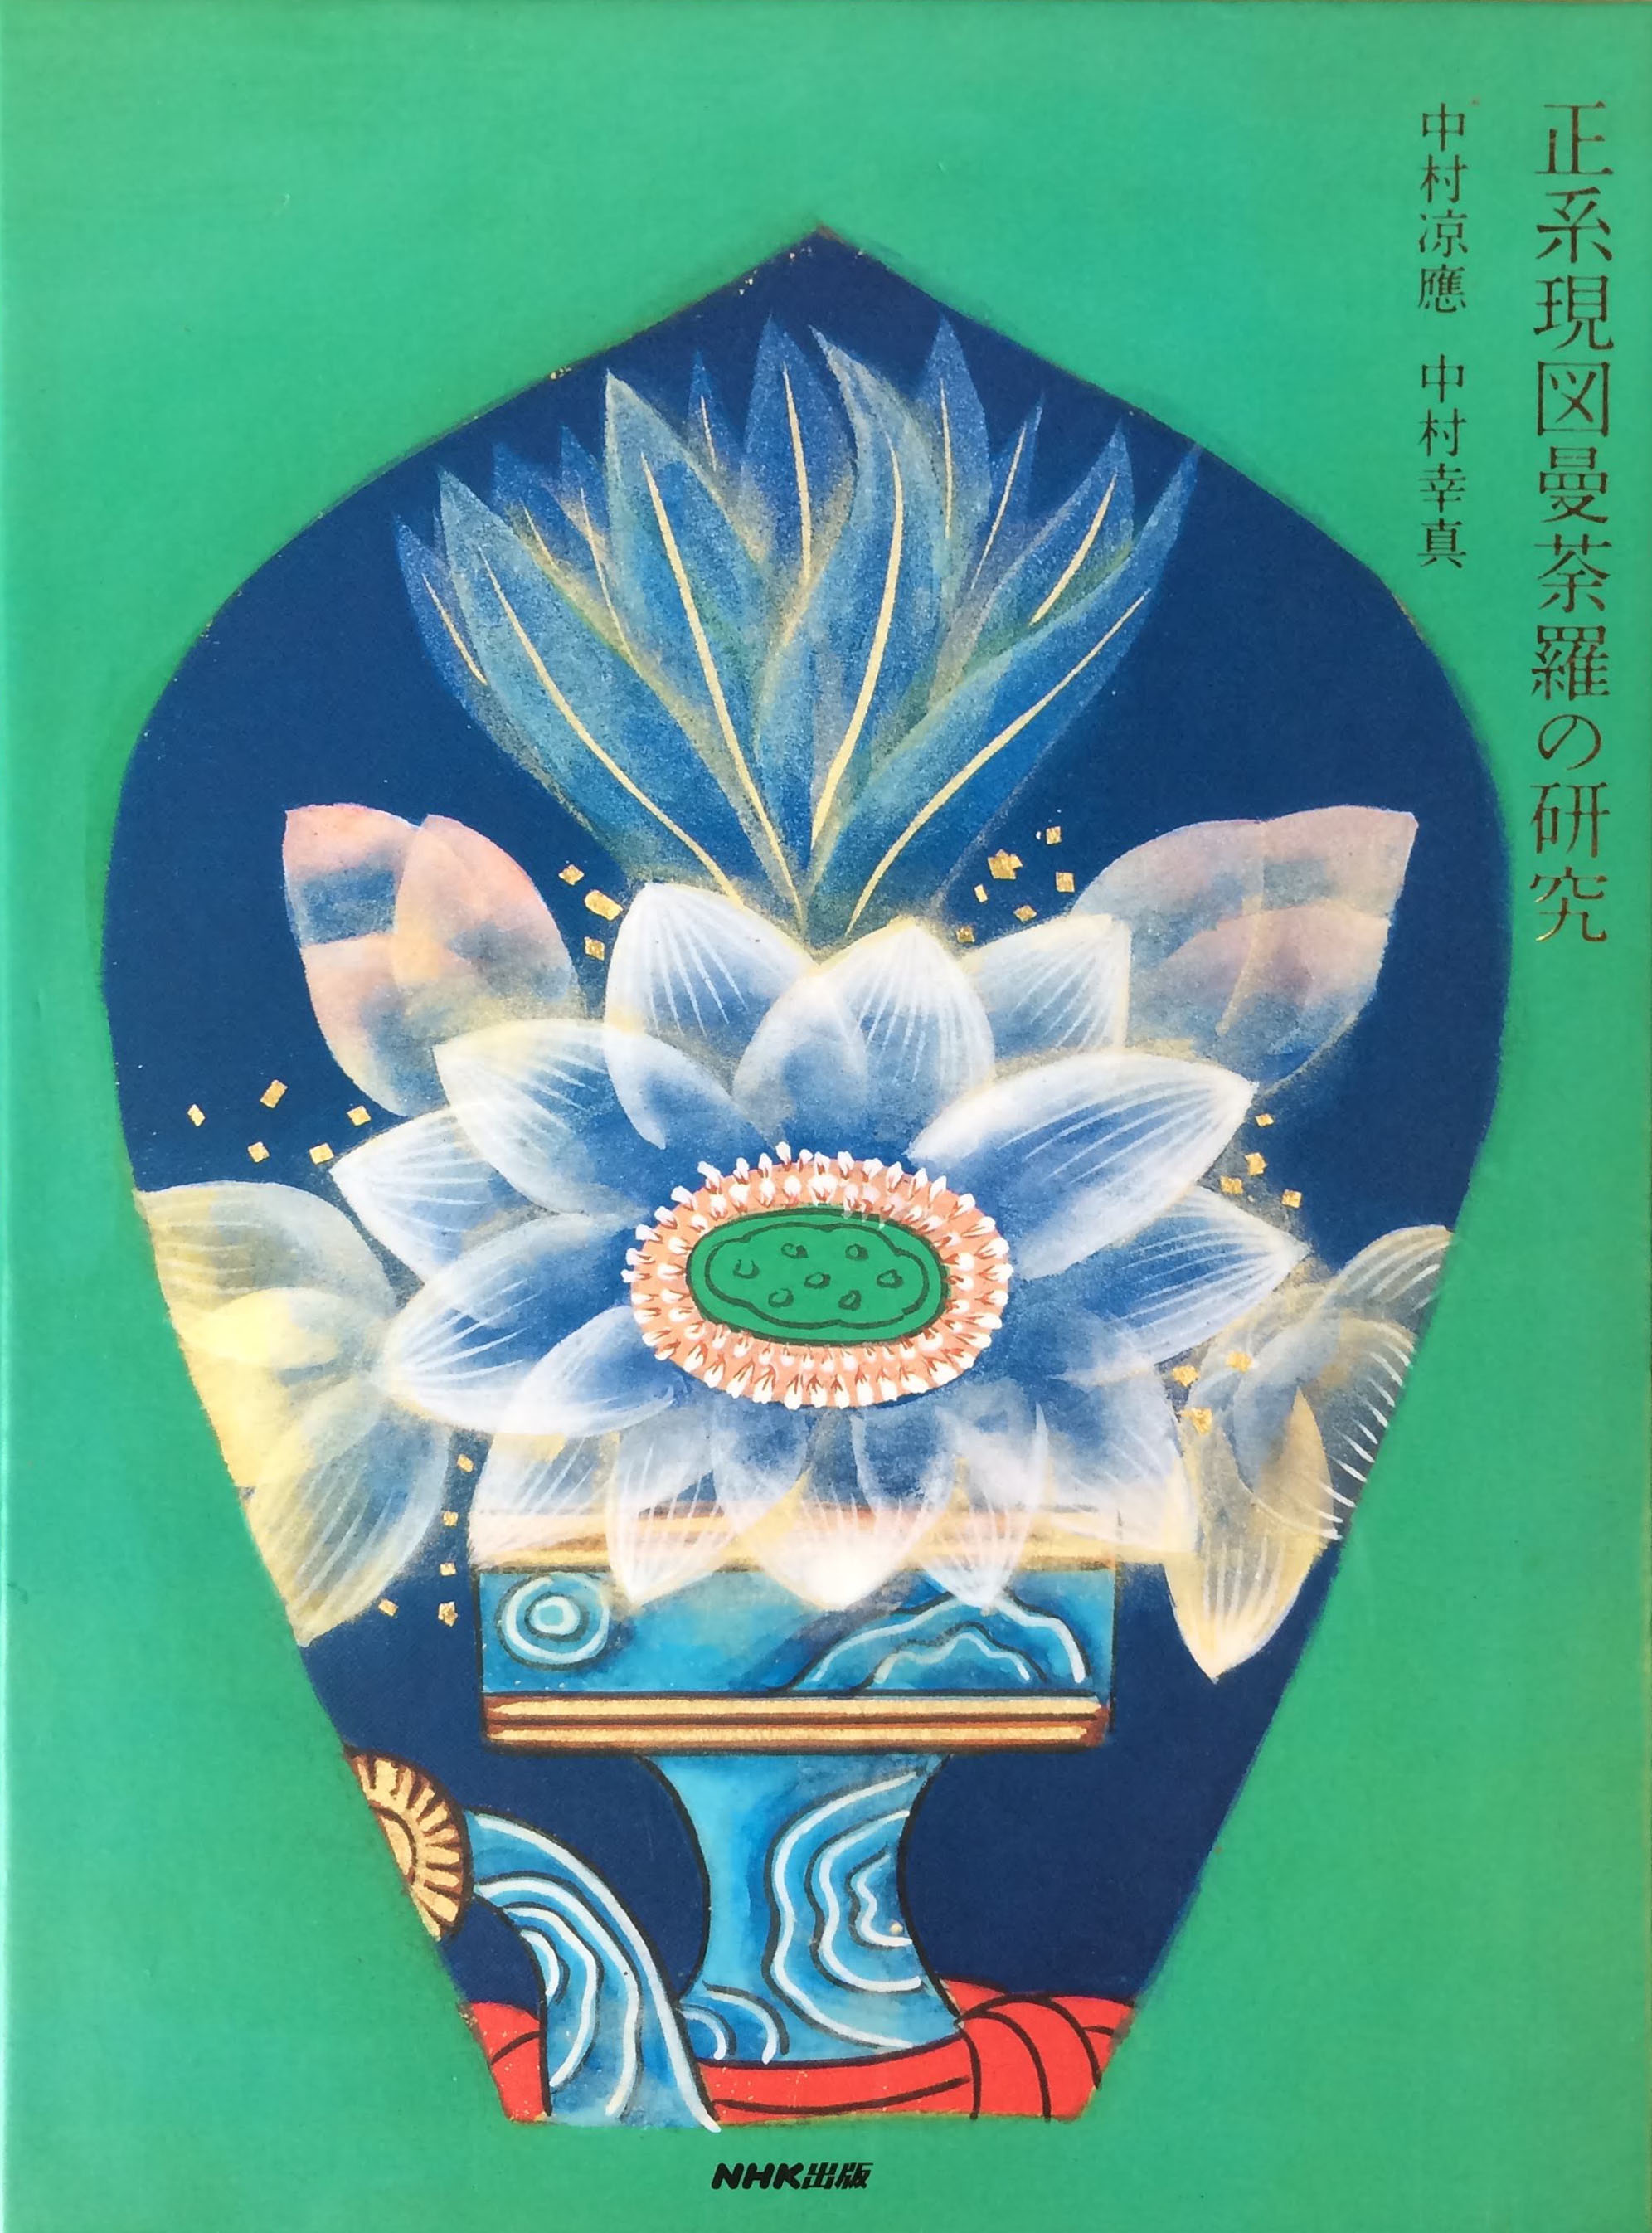 “太田亨出版物「正系原図曼荼羅の研究」NHK出版刊”